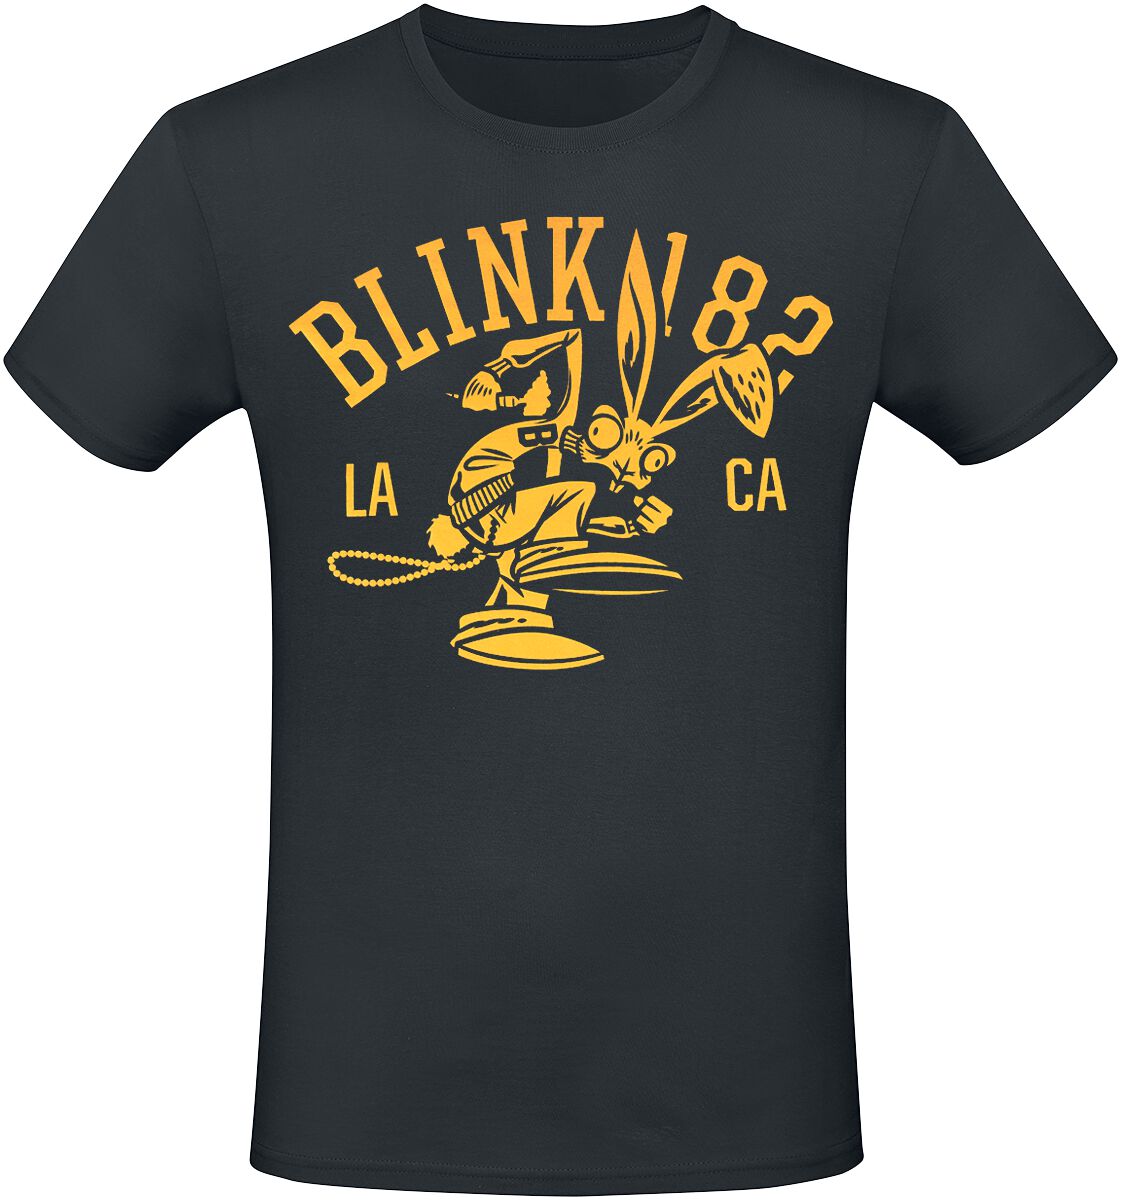 Blink-182 T-Shirt - Mascot - S bis 3XL - für Männer - Größe 3XL - schwarz  - Lizenziertes Merchandise!